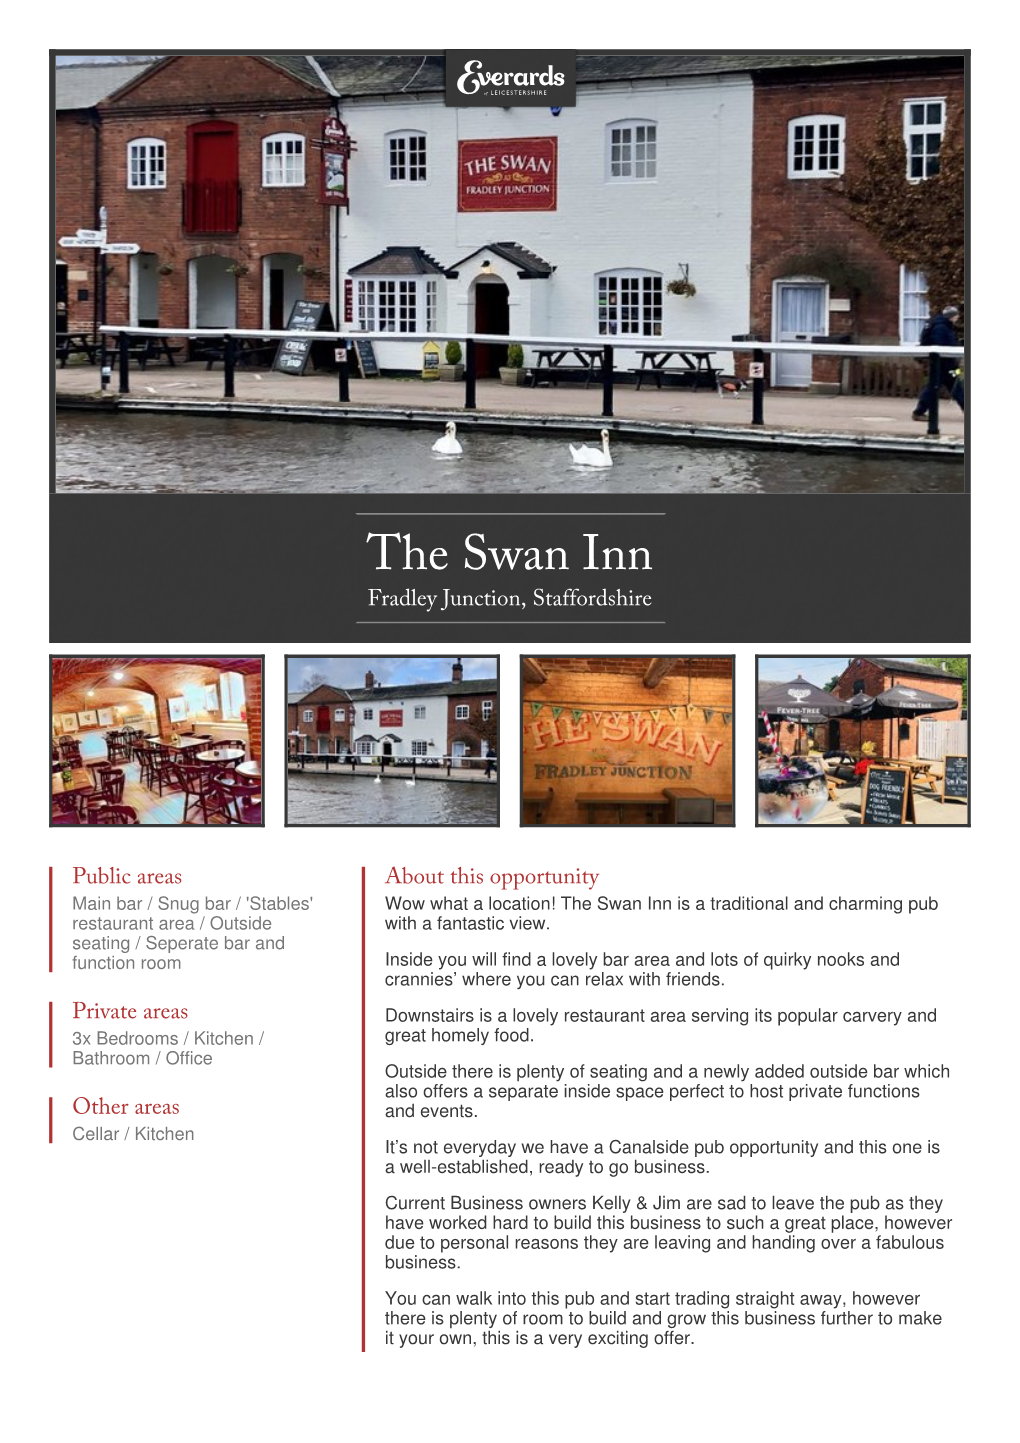 The Swan Inn in Fradley Junction, Staffordshire